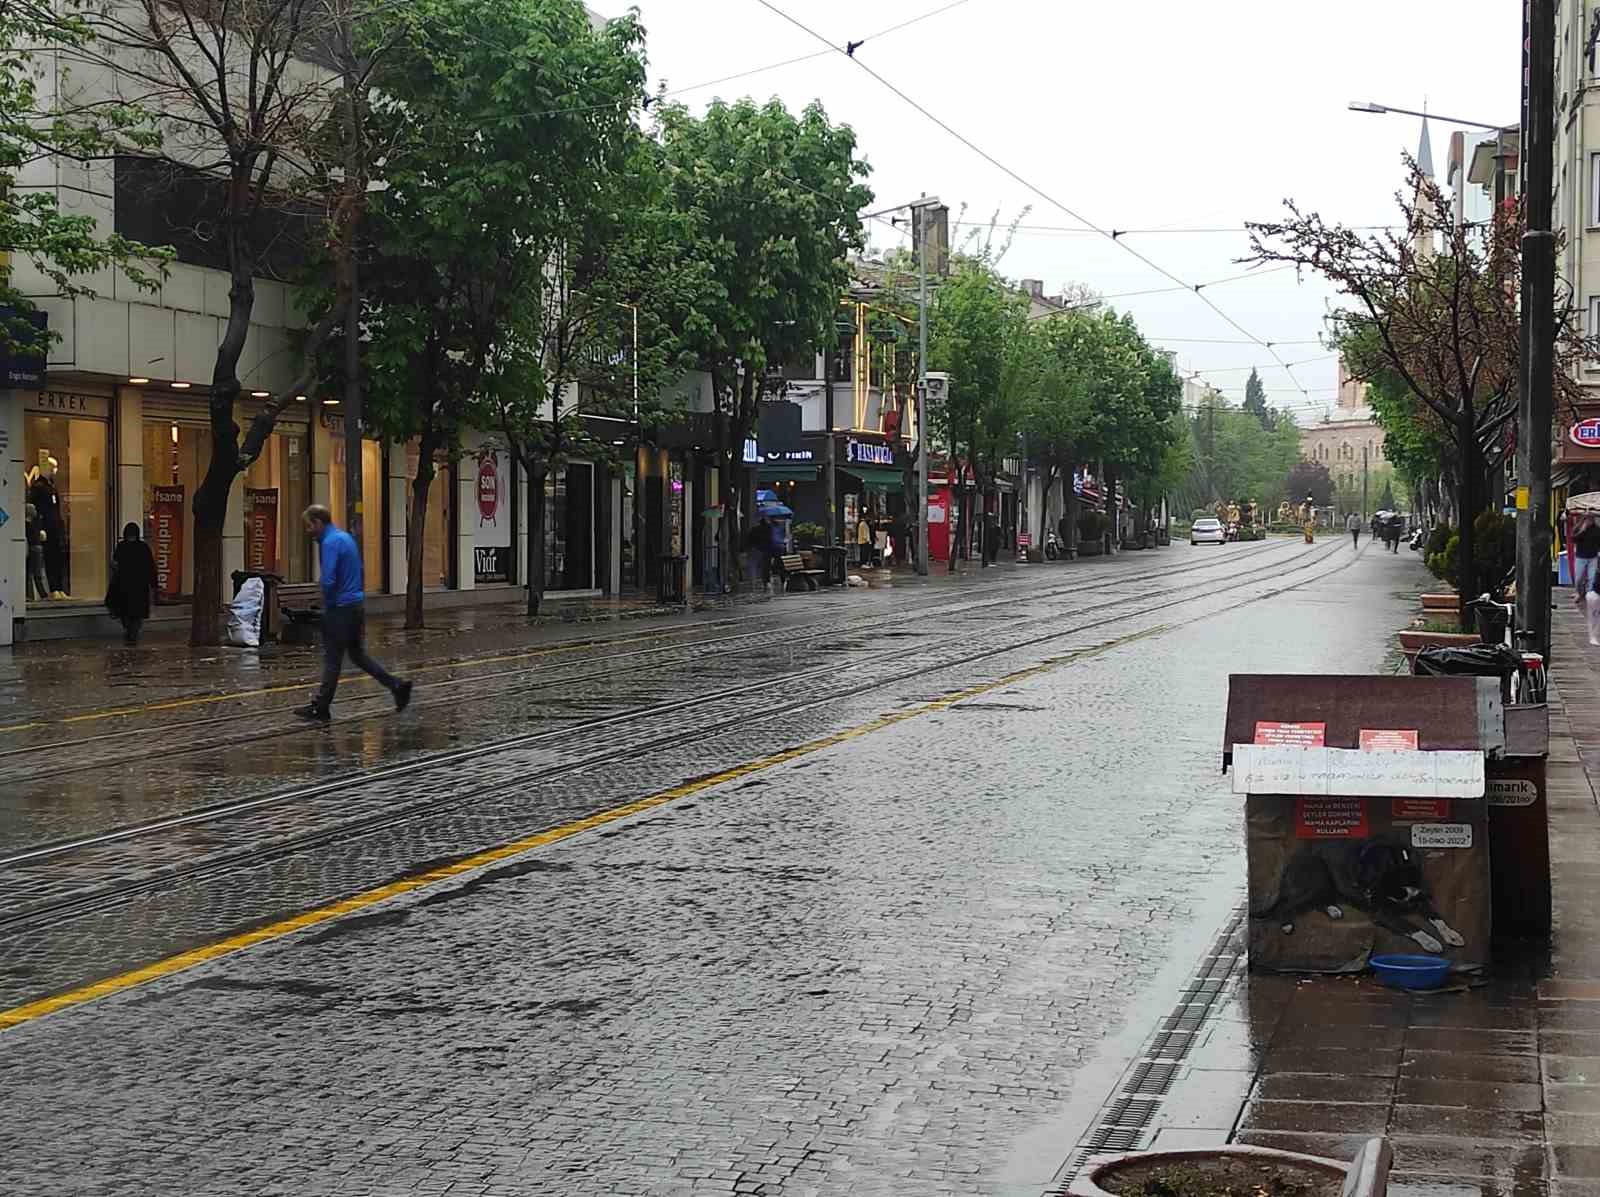 Yağmur, vatandaşların hafta sonu gezisine engel oldu